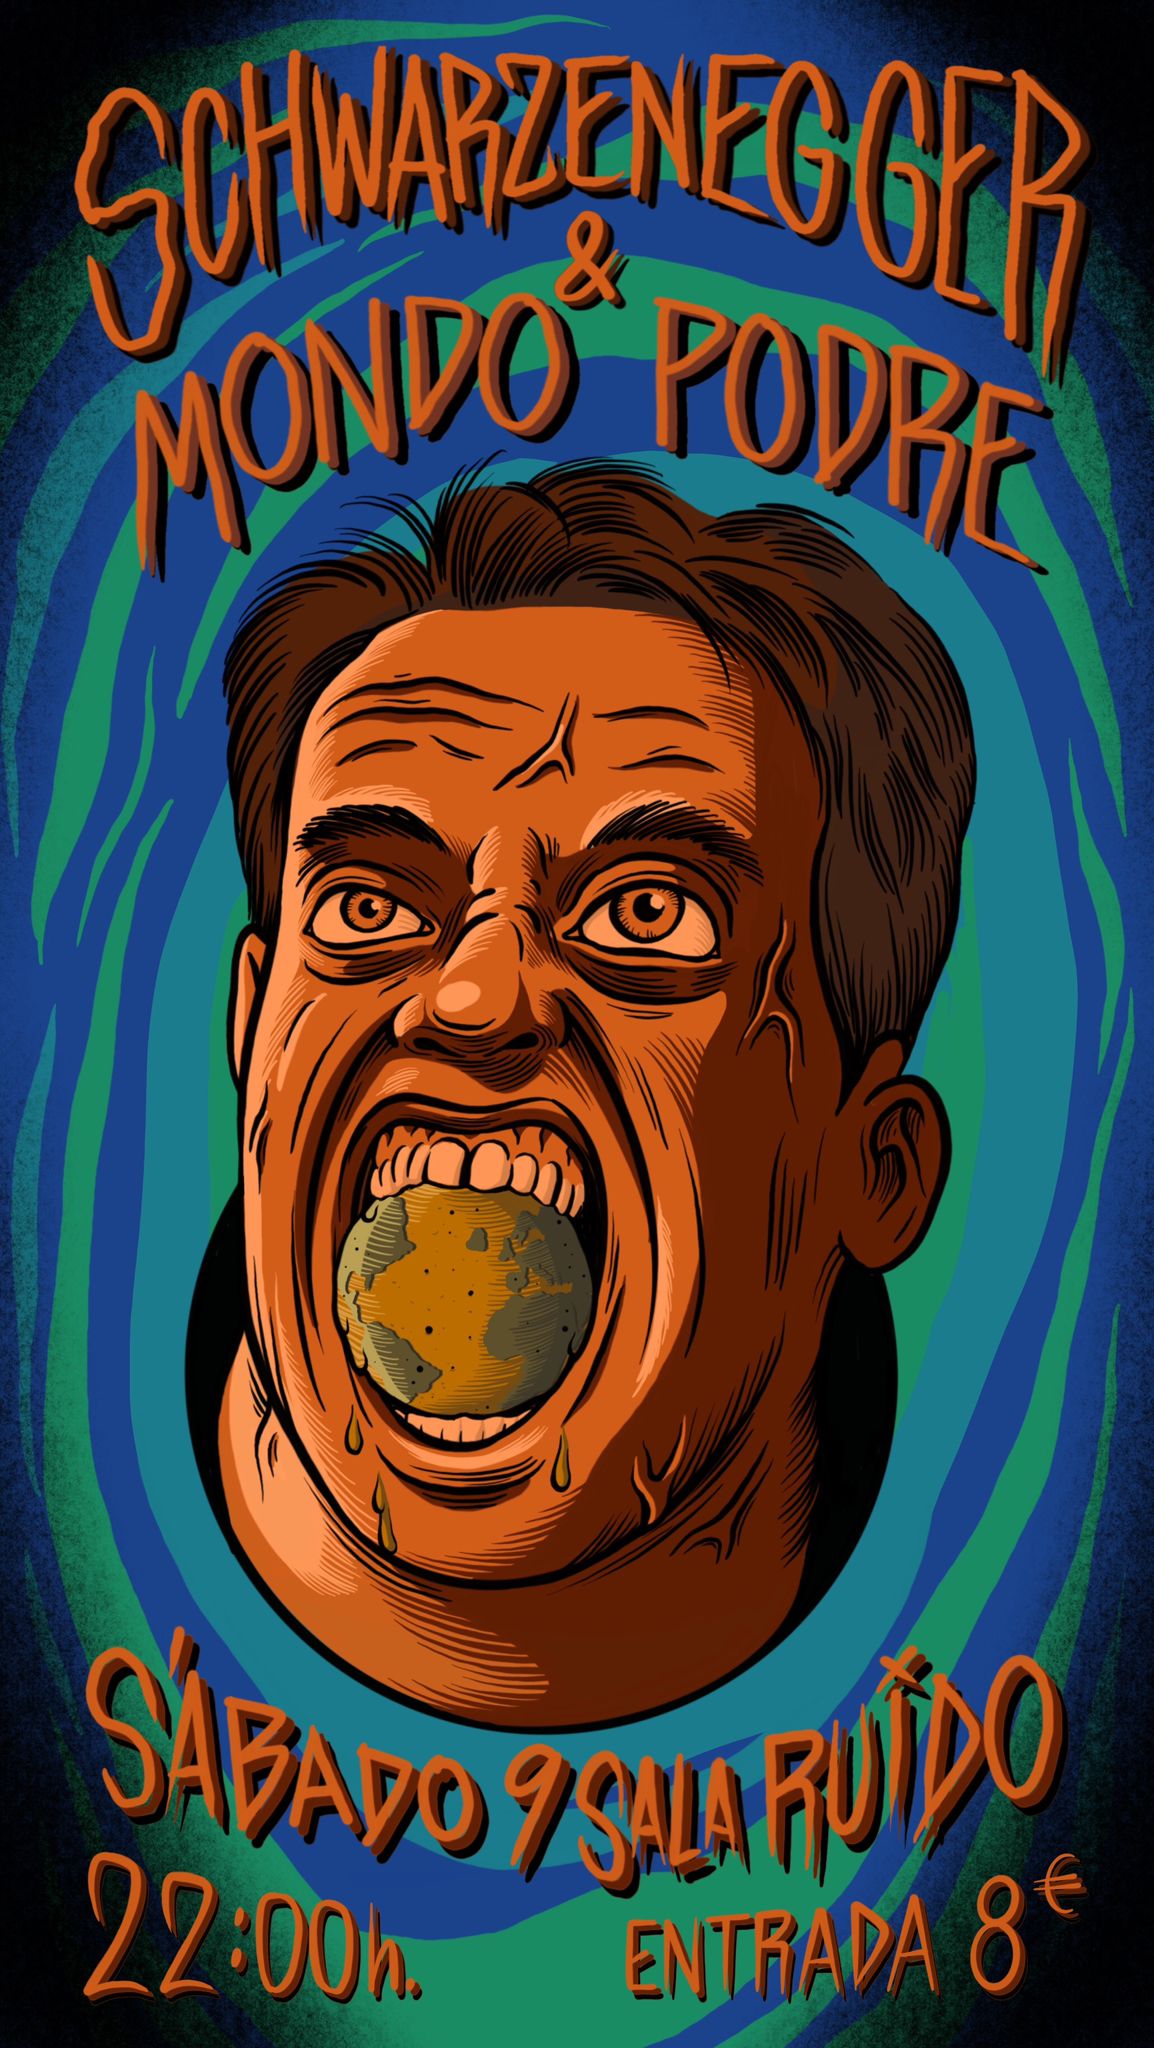 Mondo Podre + Schwarzenegger